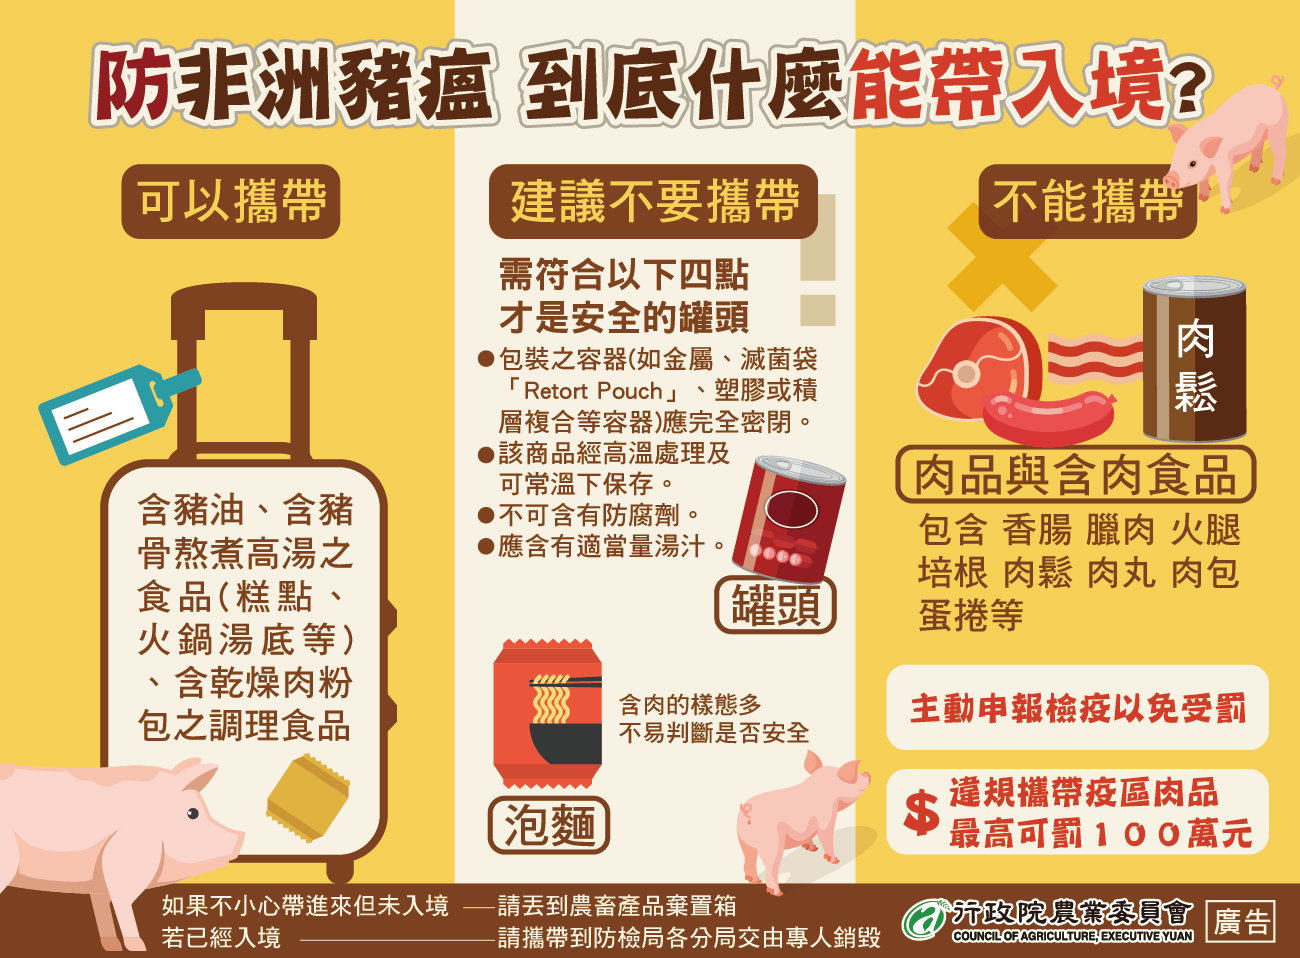 Toàn Đài Loan quyết tâm phòng chống dịch tả lợn châu Phi. (Nguồn ảnh: Bộ Nông nghiệp Đài Loan)